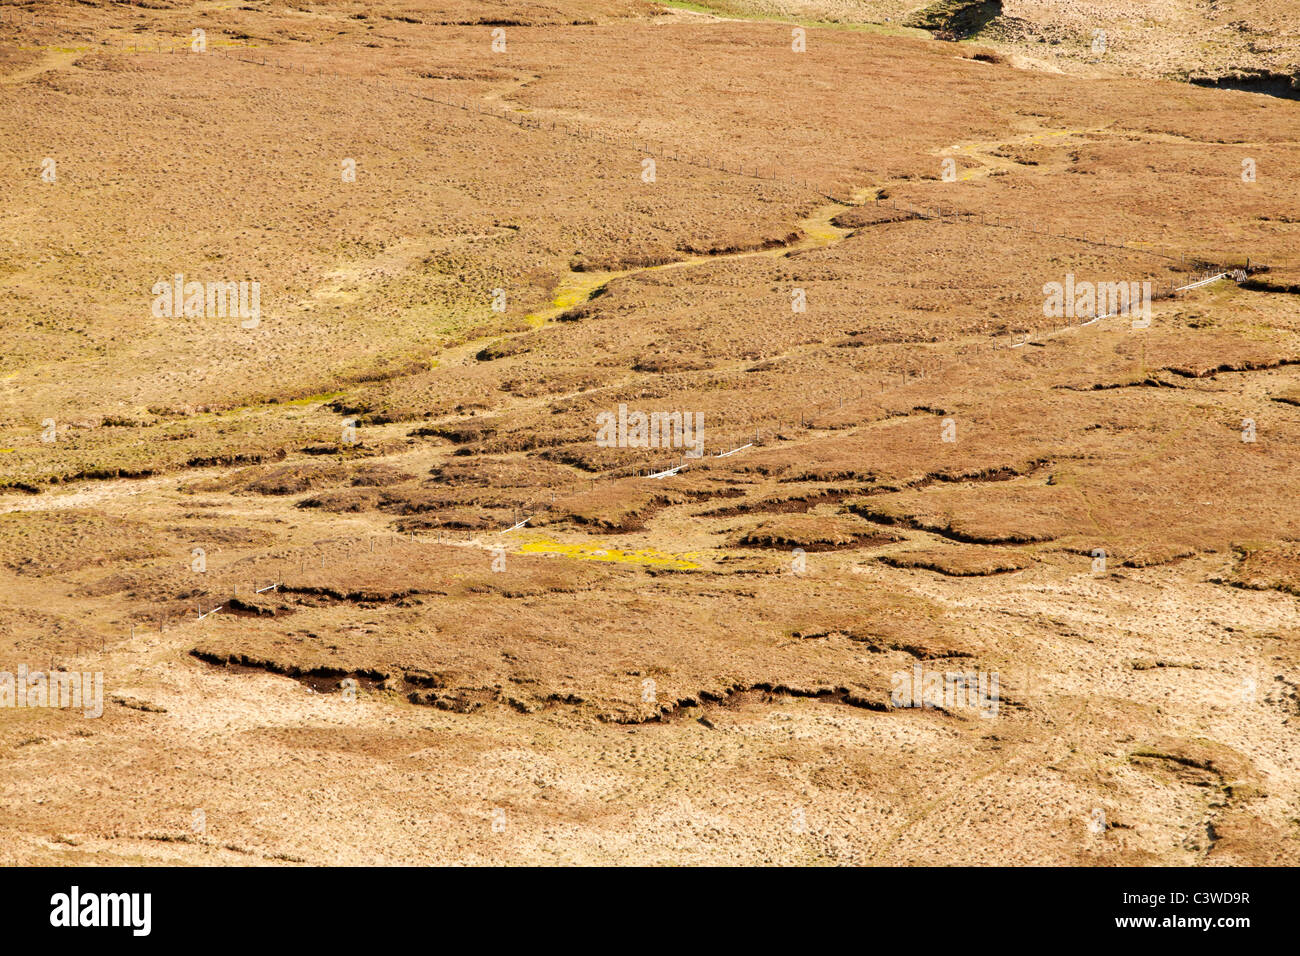 Depósitos de turba en páramos, cerca de una amplia legislación en las tierras altas meridionales, Escocia, Reino Unido. Foto de stock